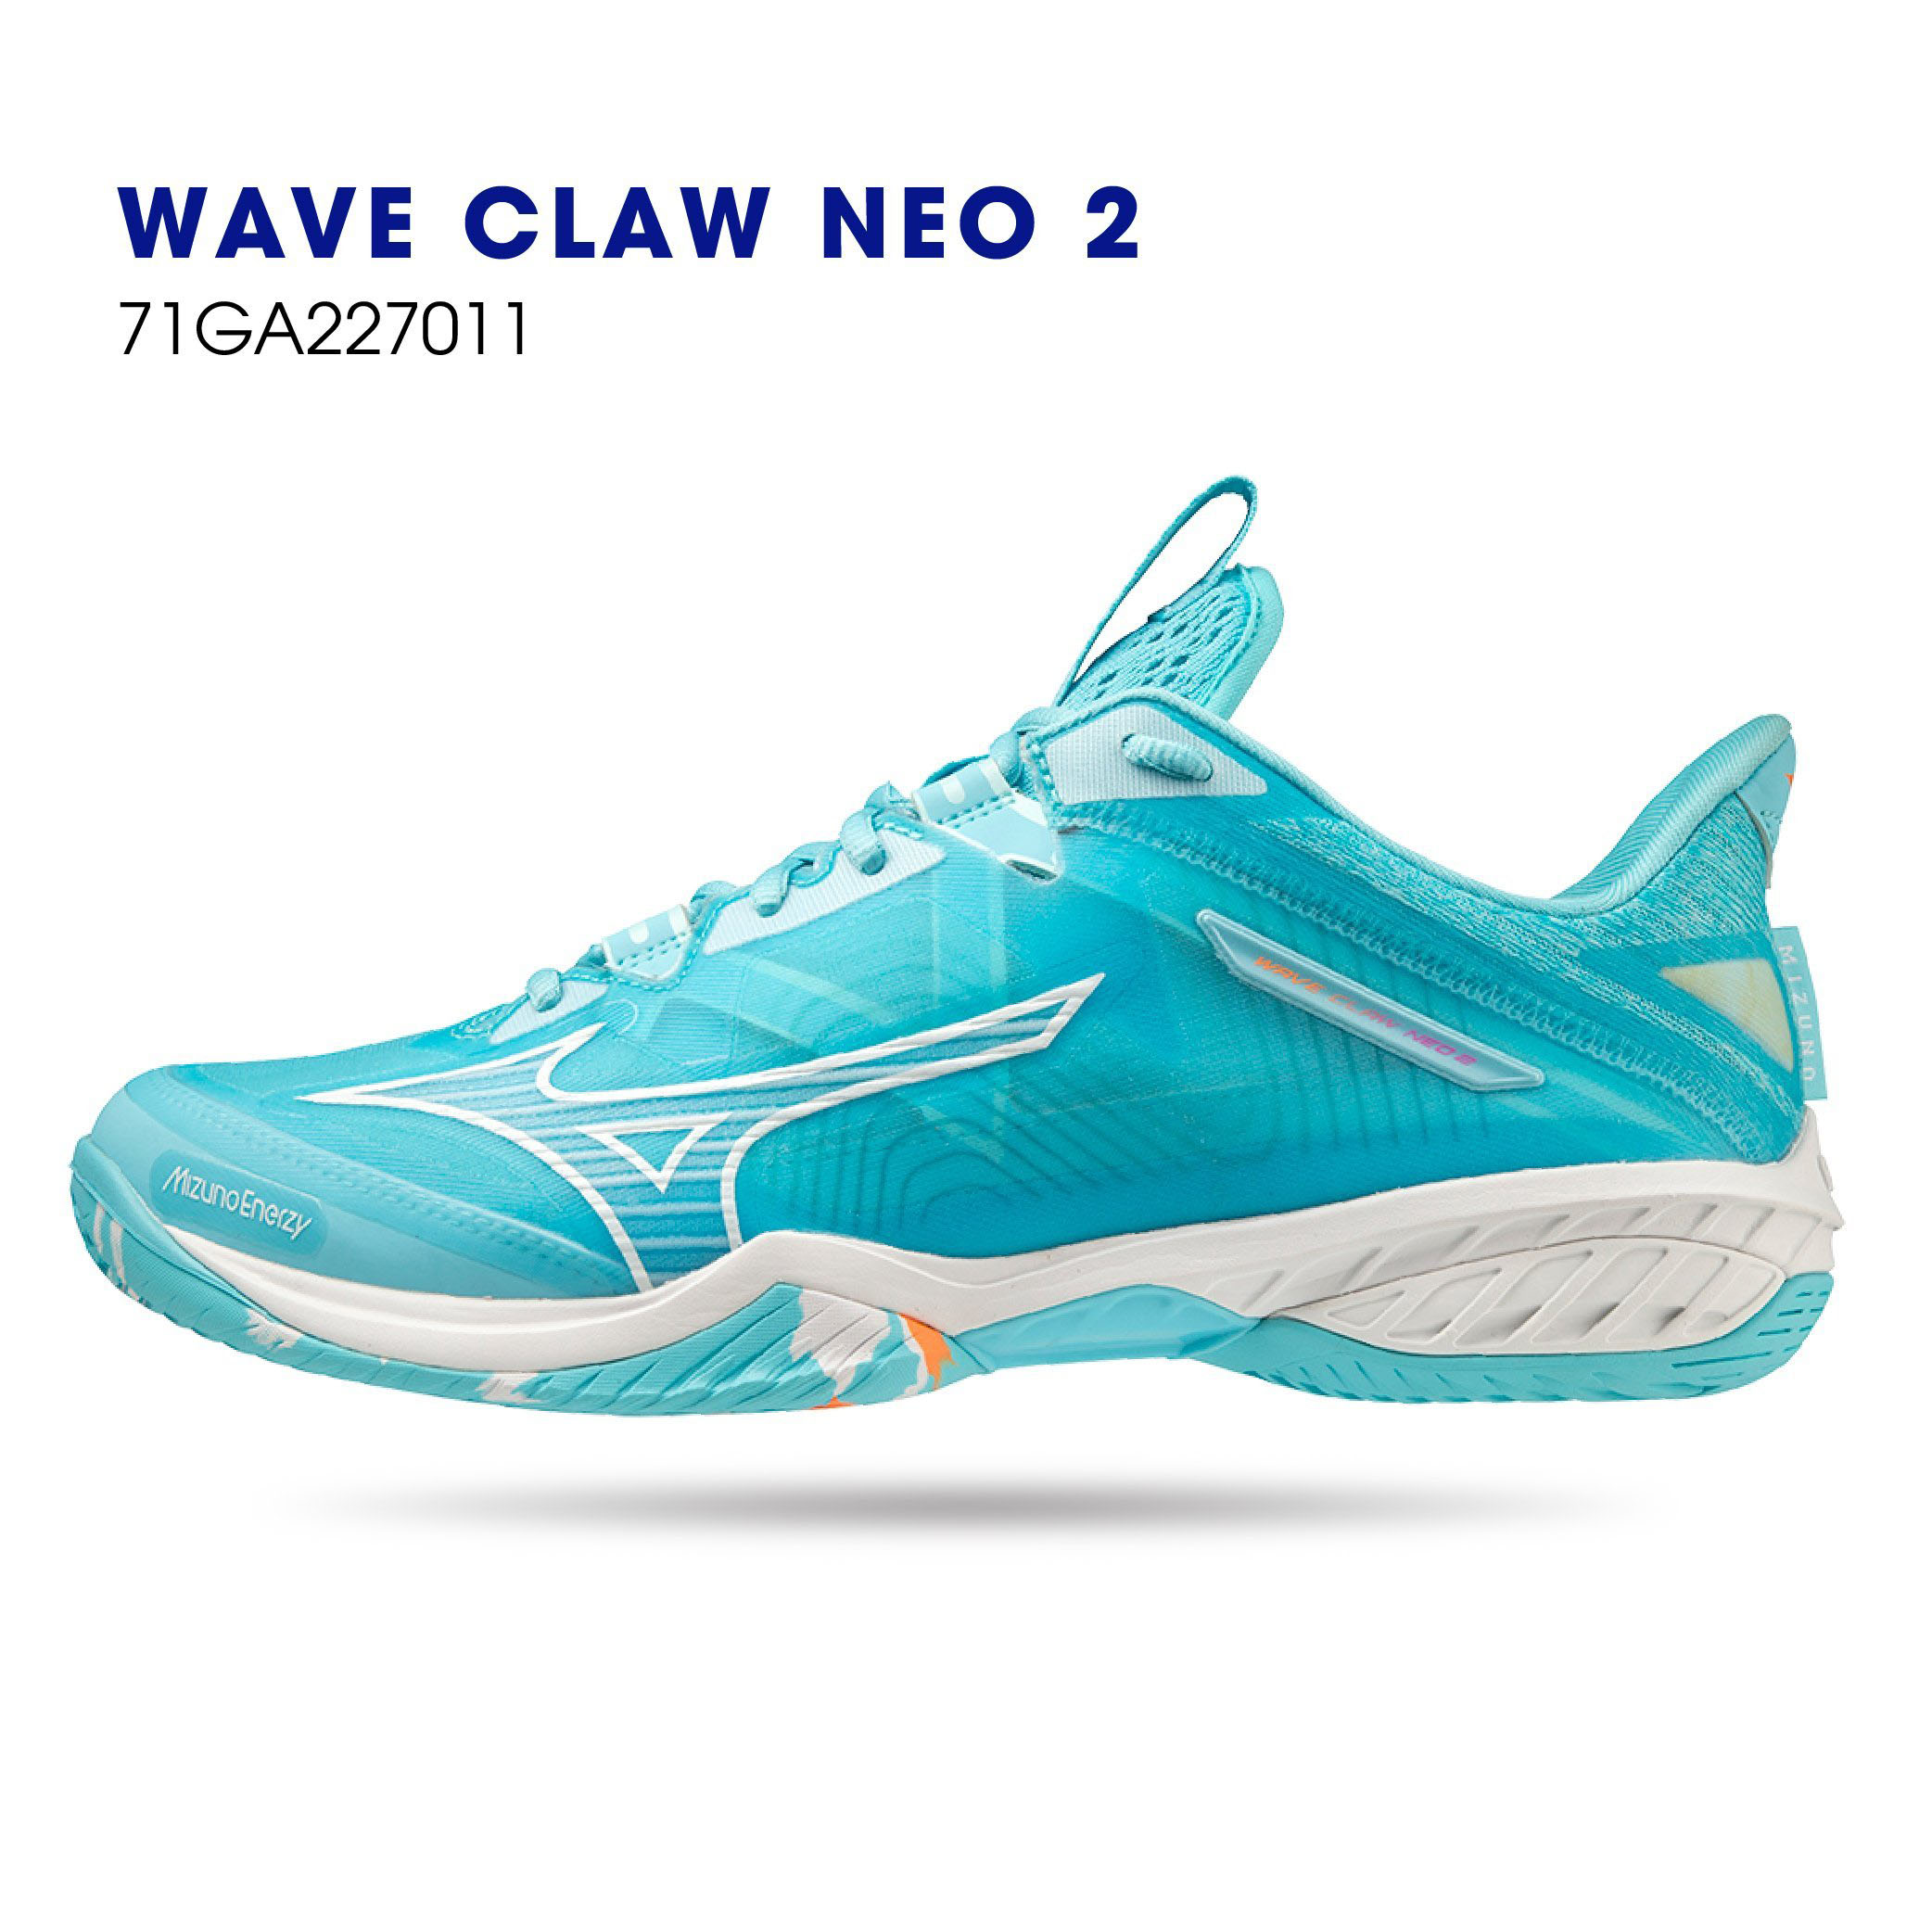 Giày cầu lông Mizuno Wave Claw neo 2 chính hãng chuyên nghiệp cho cả nam và nữ-tặng tất thể thao bendu